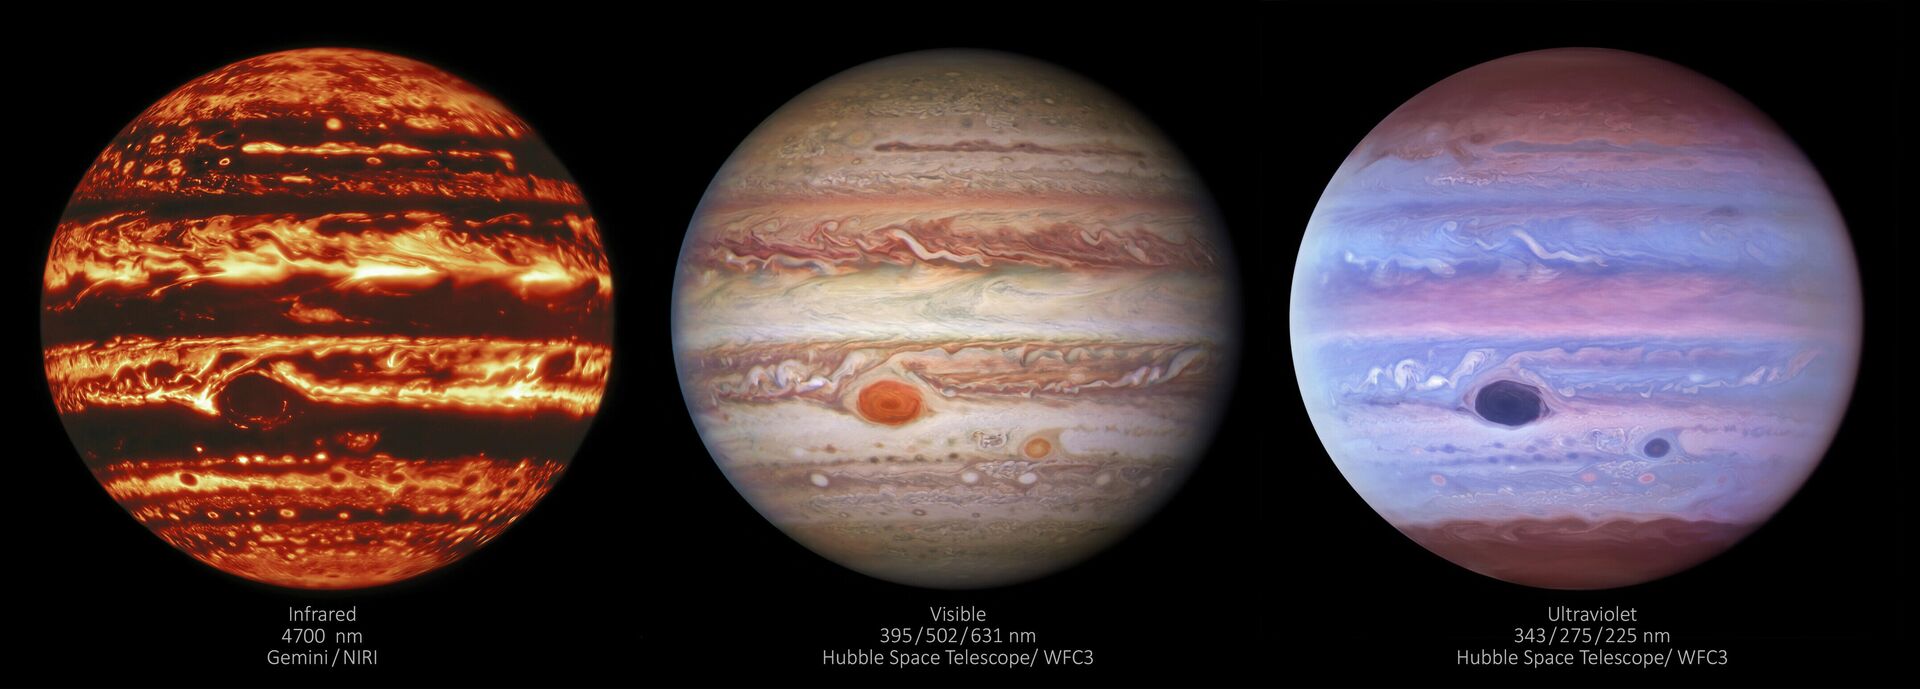 Tres imágenes de Júpiter hecha en distintas longitudes de ondas - Sputnik Mundo, 1920, 12.05.2021